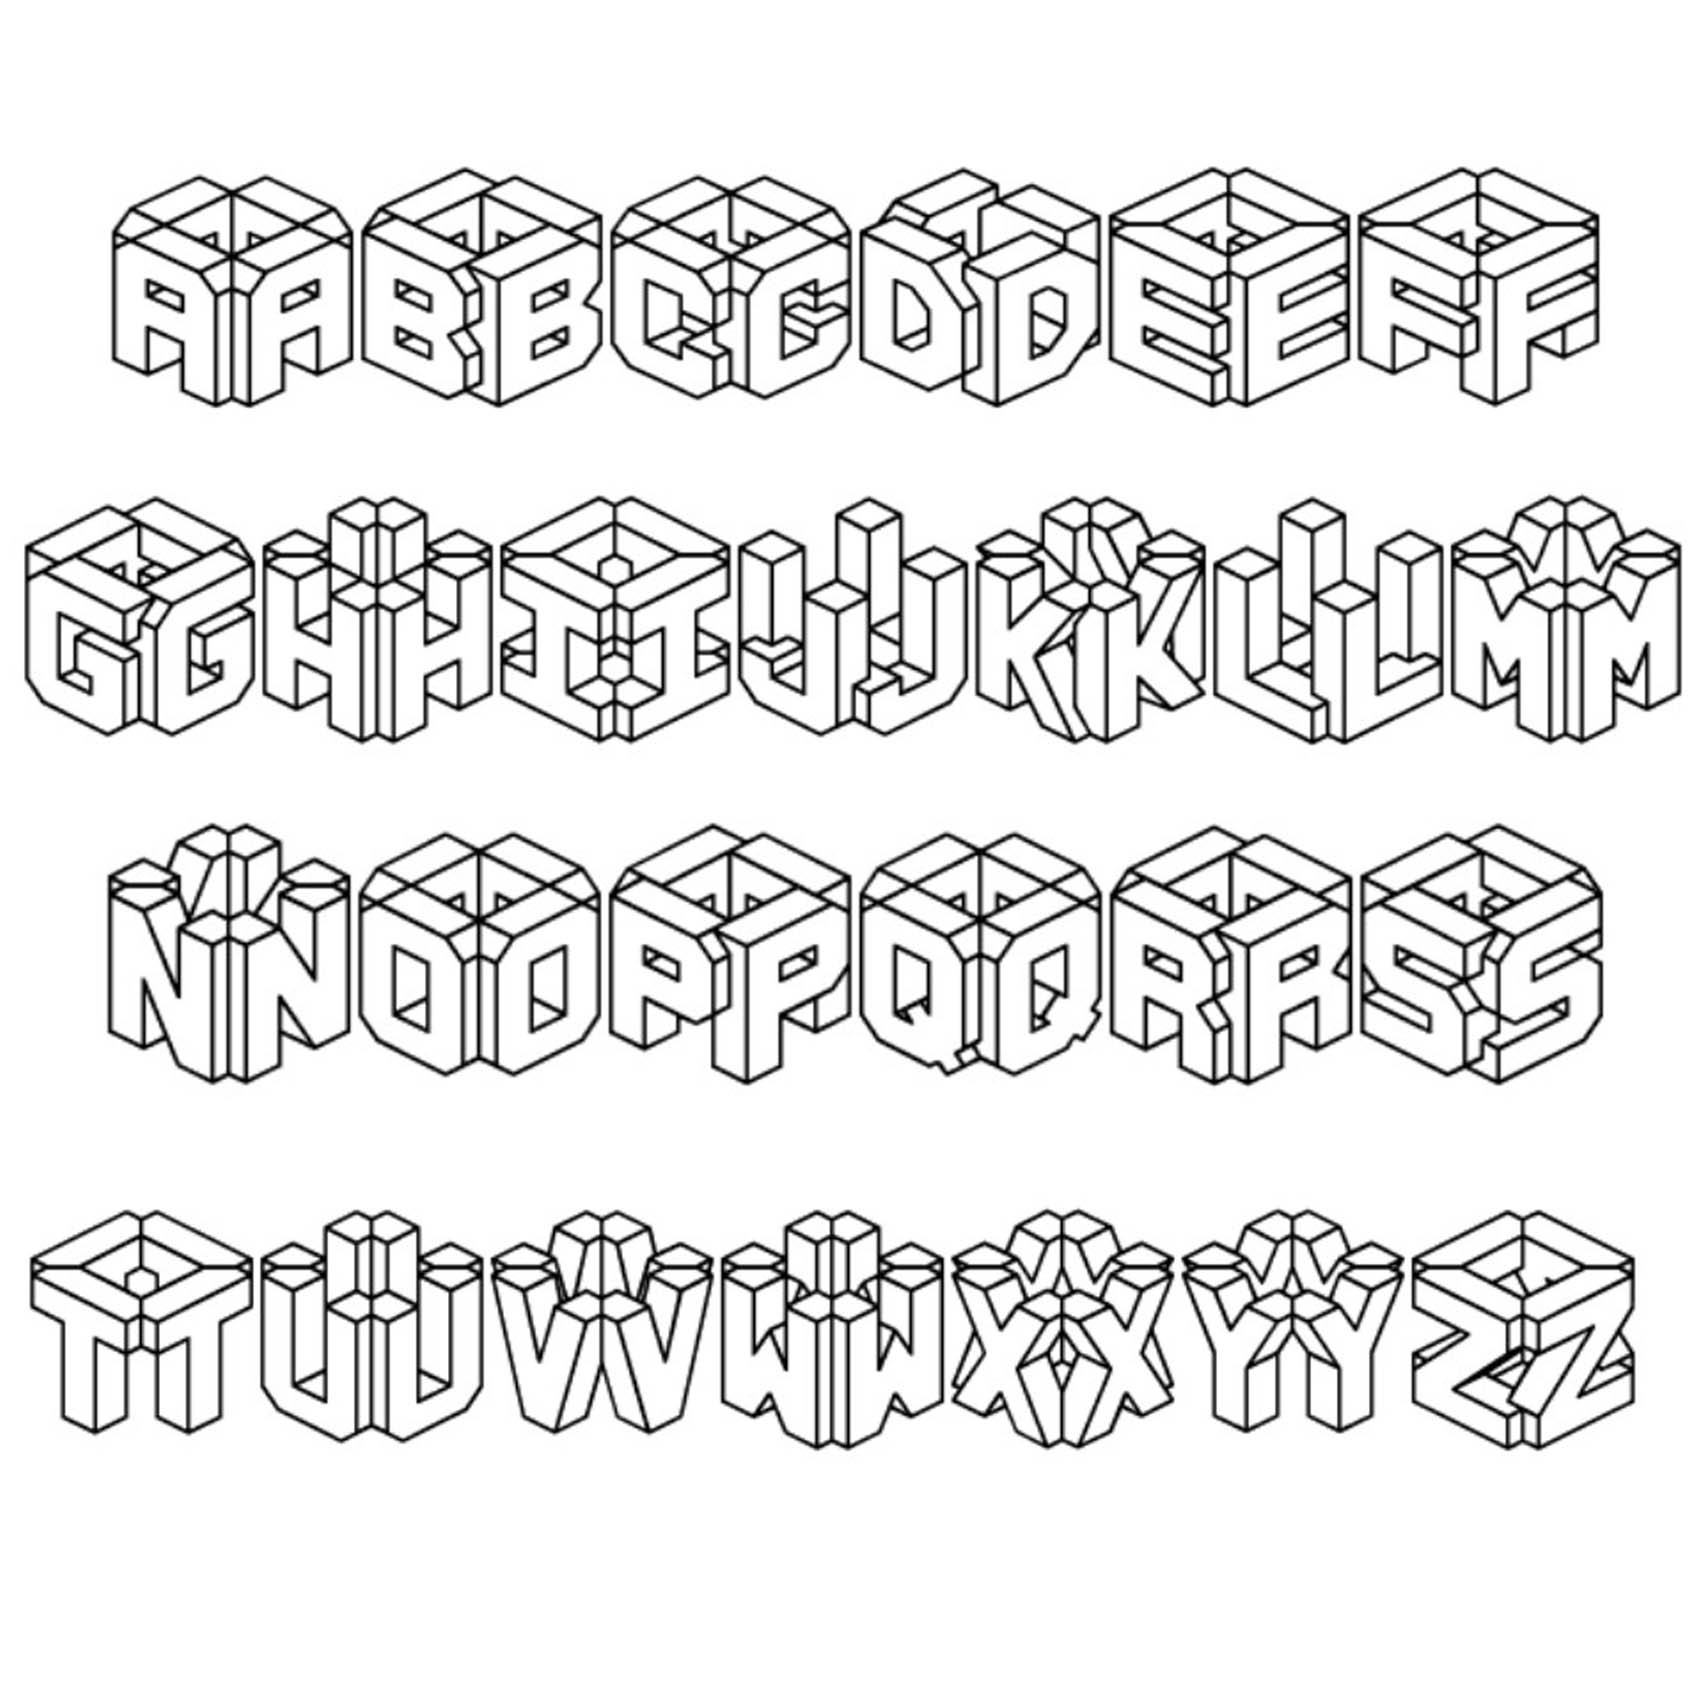 15-letter-fonts-az-images-3d-graffiti-letter-fonts-3d-graffiti-alphabet-fonts-and-alphabet